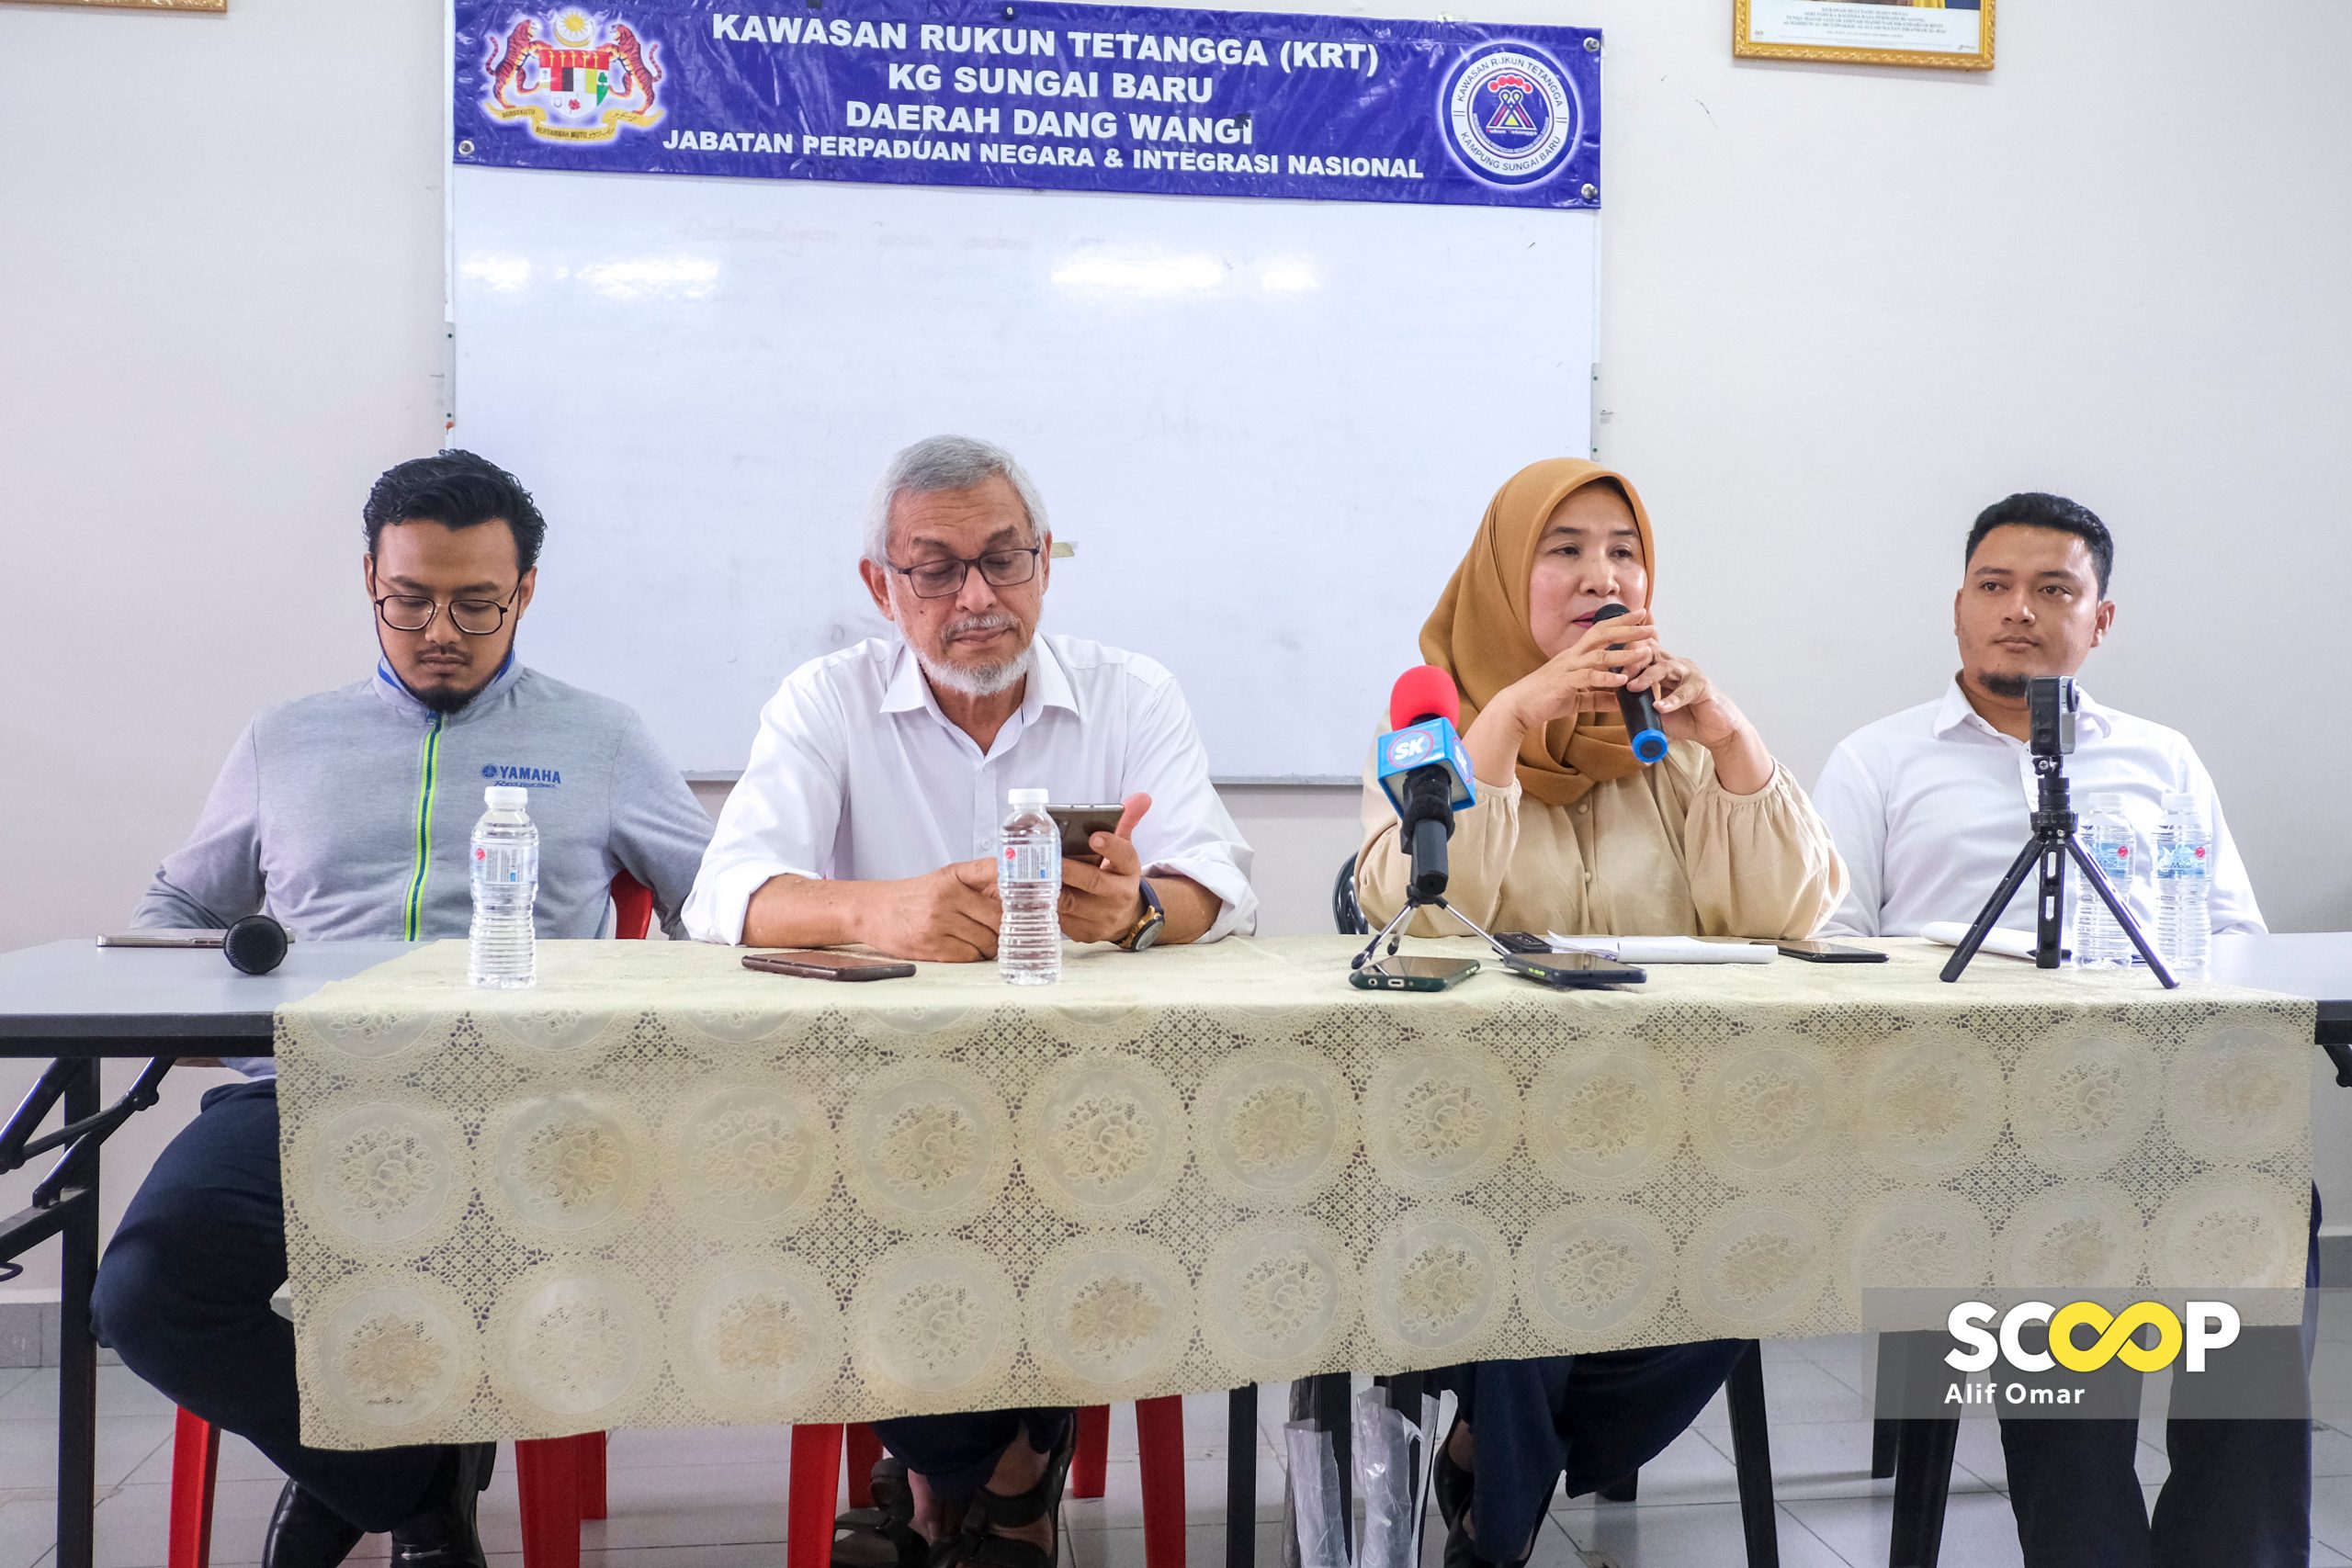 Kg Sg Baru saga: residents place trust in Anwar for fairer compensation 